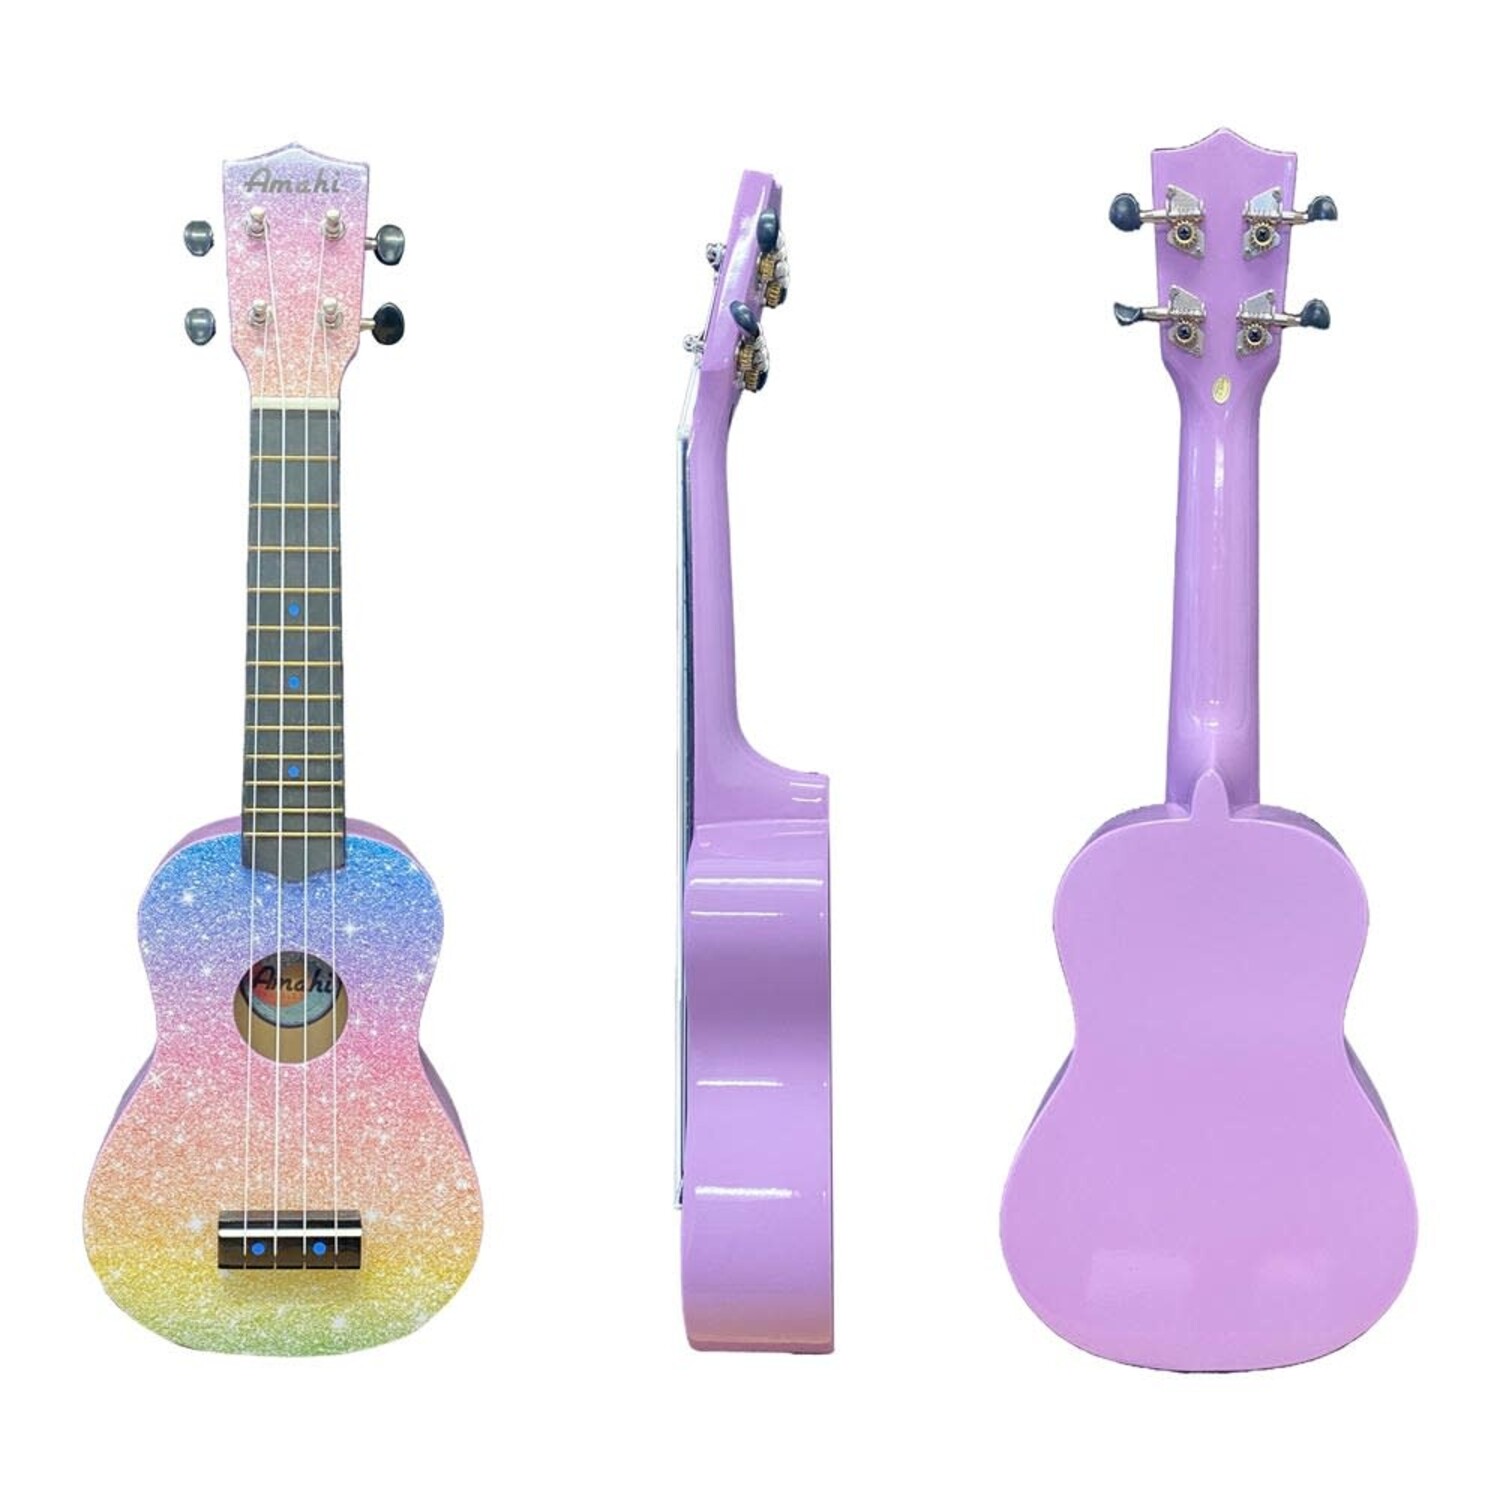 https://cdn.shoplightspeed.com/shops/653480/files/58576303/1500x4000x3/amahi-ukuleles-patterned-amahi-ukulele.jpg